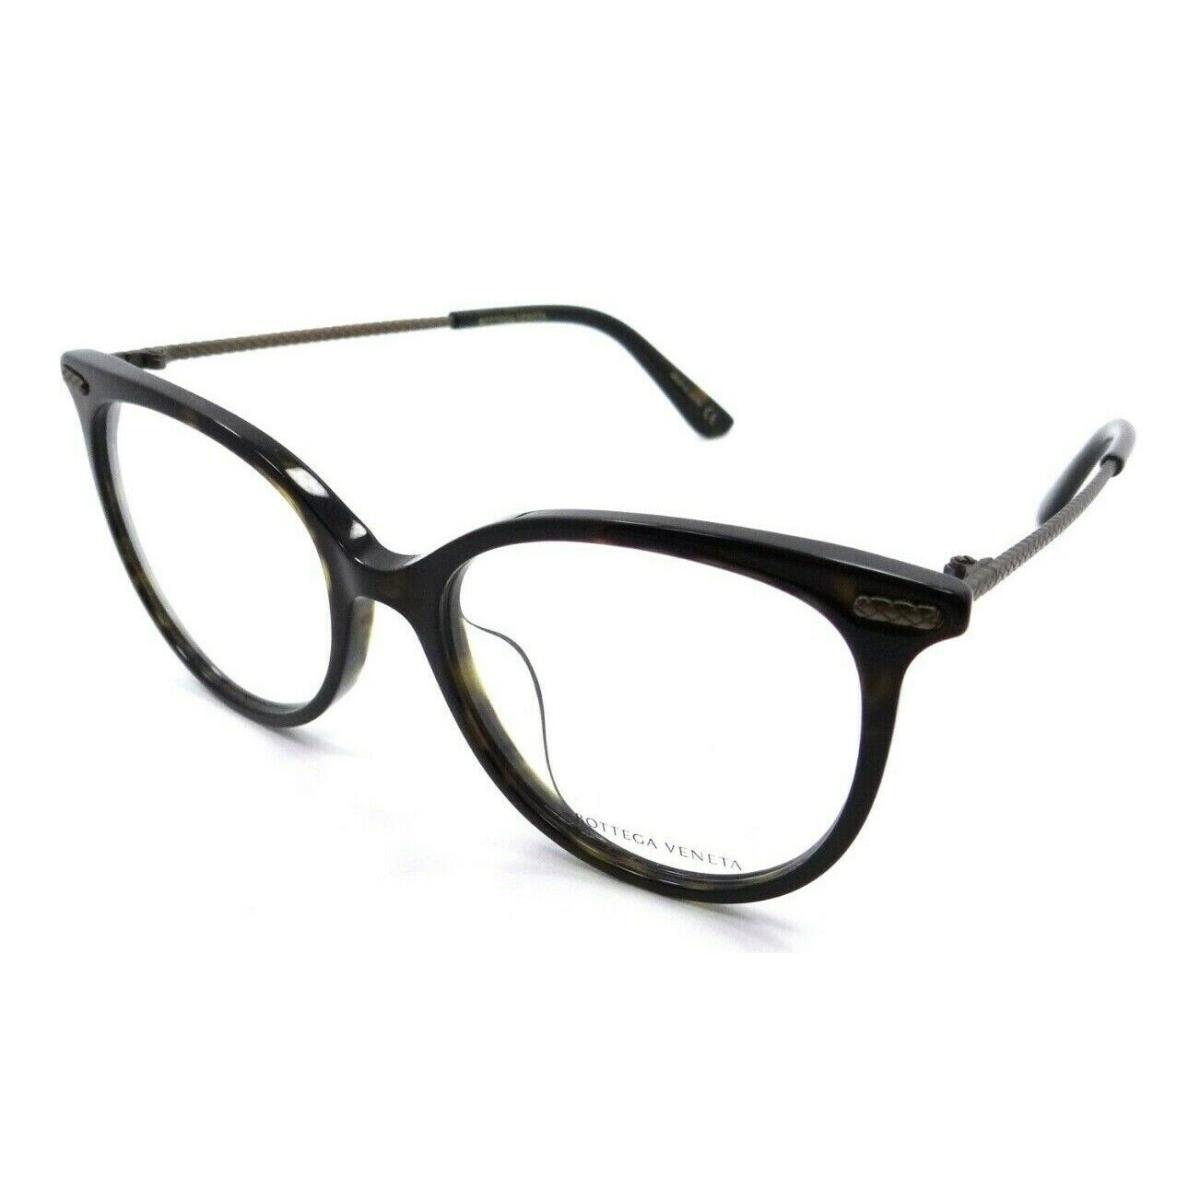 Bottega Veneta Eyeglasses Frames BV0031OA 004 53-18-145 Dark Havana Asian Fit